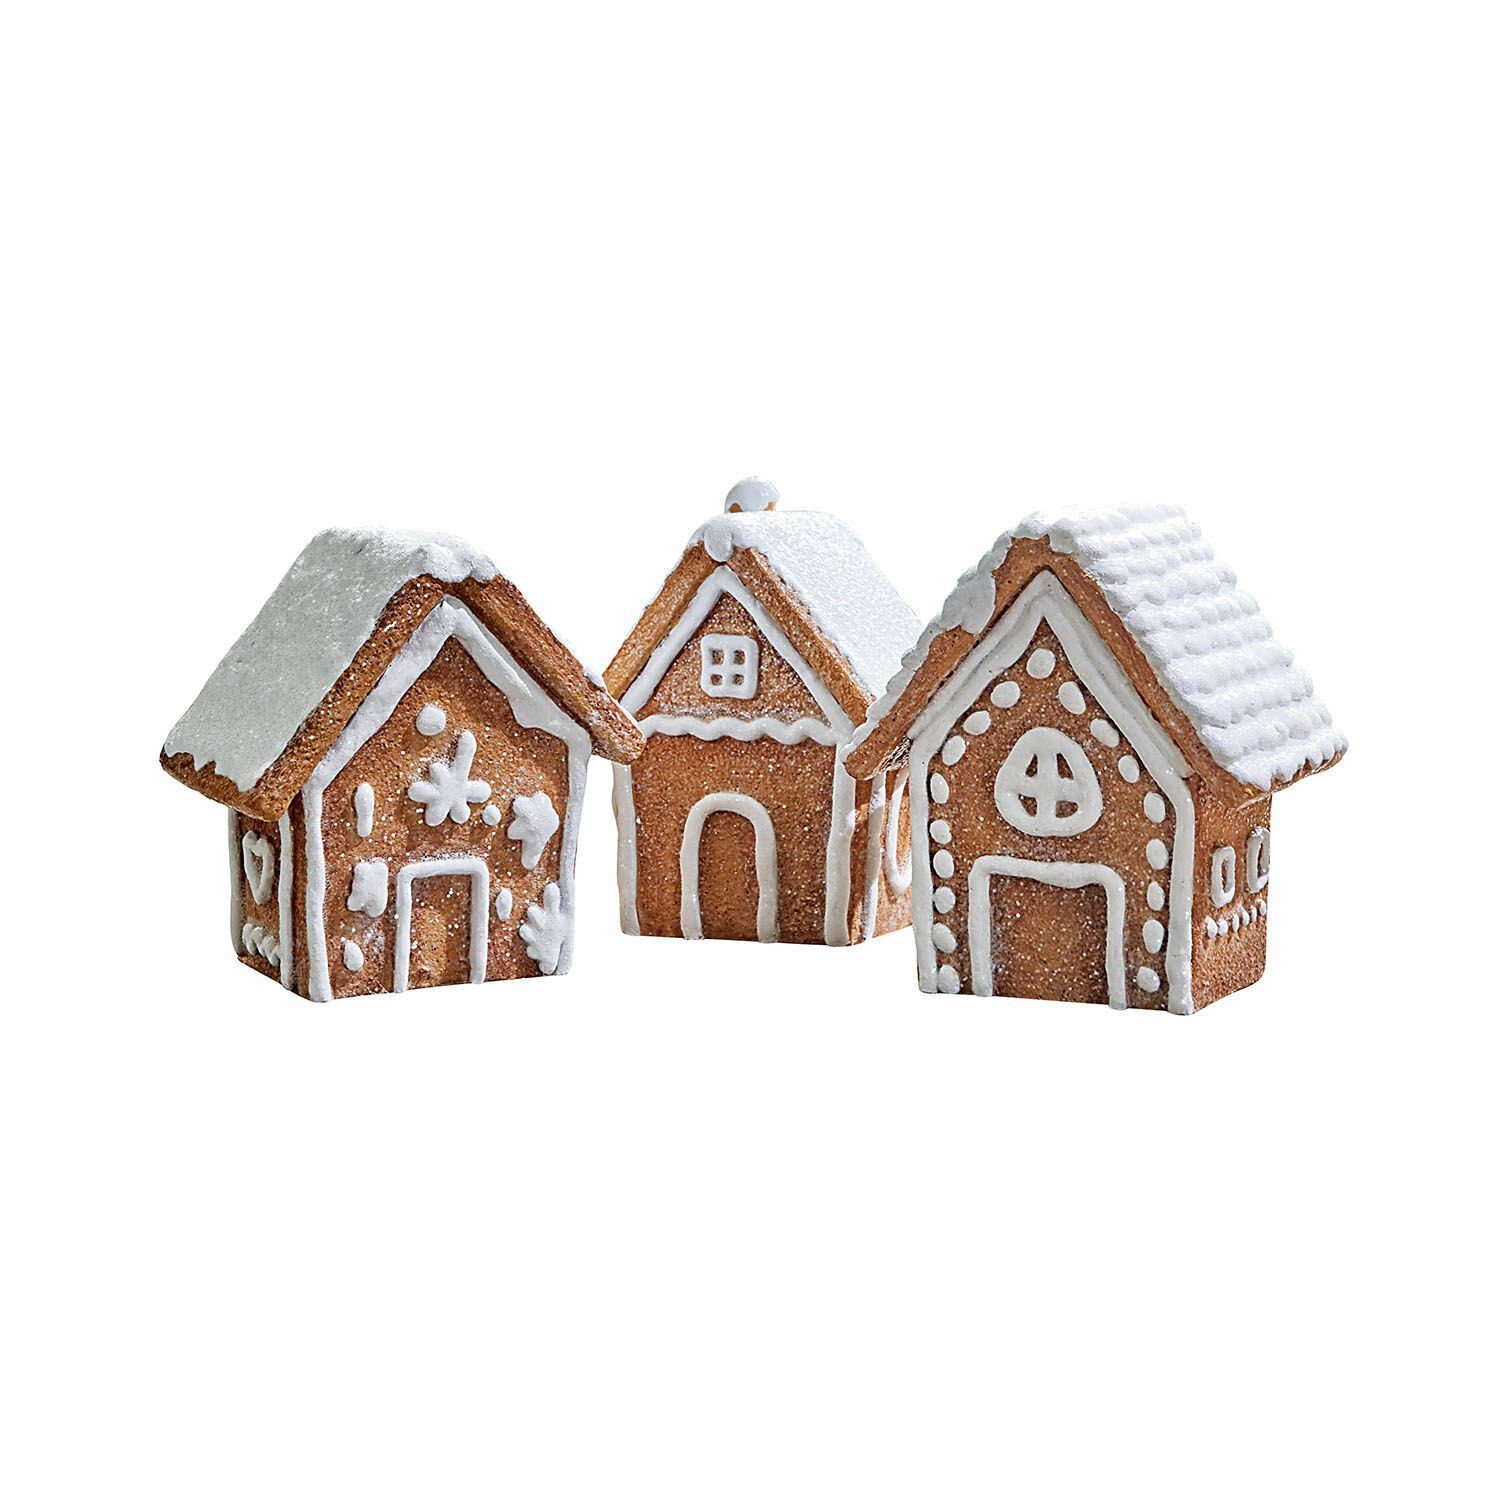 Mirabeau Weihnachtshaus Lebkuchenhaus Bichette Set braun/weiß 3er